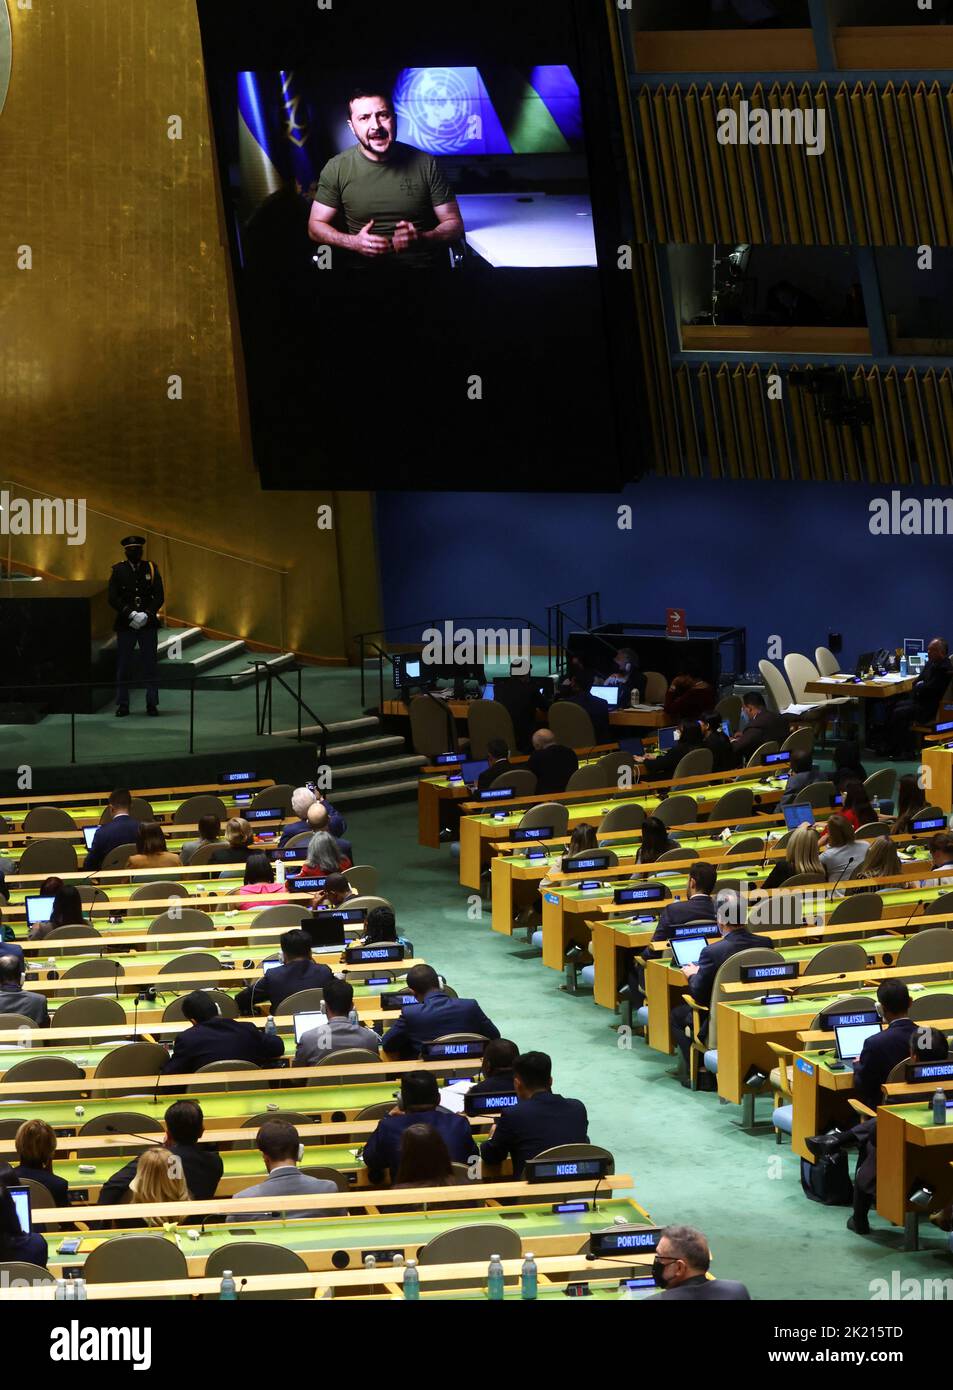 Le président ukrainien Volodymyr Zelenskiy est photographié sur un écran vidéo alors qu’il prononce une allocution enregistrée à la session de 77th de l’Assemblée générale des Nations Unies au siège de l’ONU à New York, aux États-Unis, au 21 septembre 2022. REUTERS/Mike Segar Banque D'Images